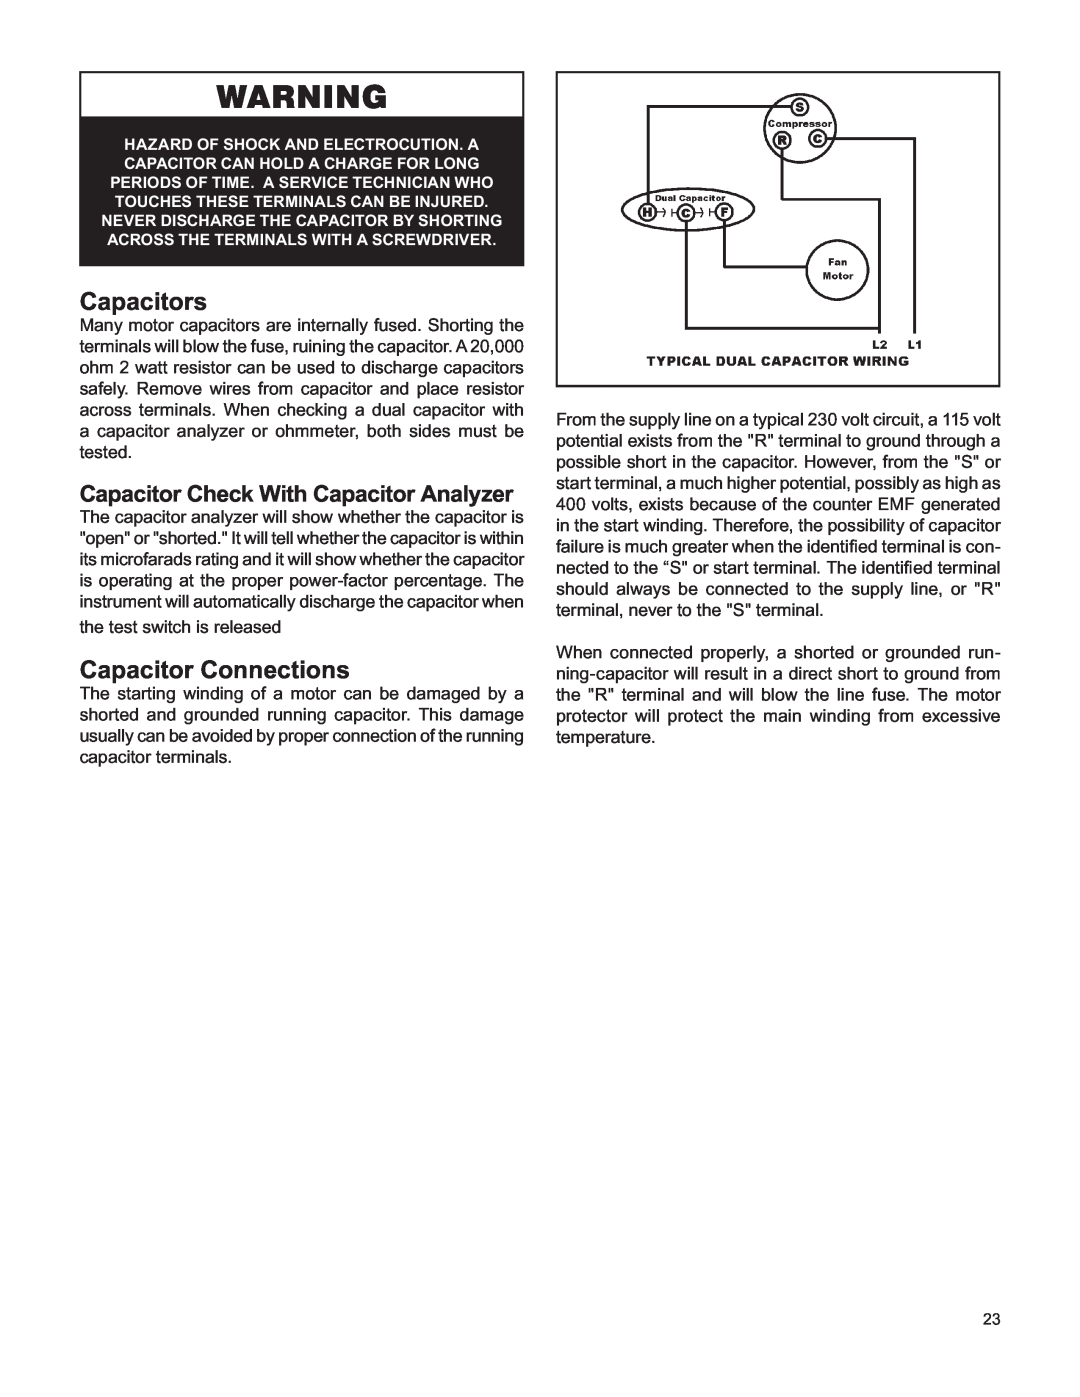 Friedrich V(E, H)A09K25 service manual Capacitors, Capacitor Connections, Capacitor Check With Capacitor Analyzer 